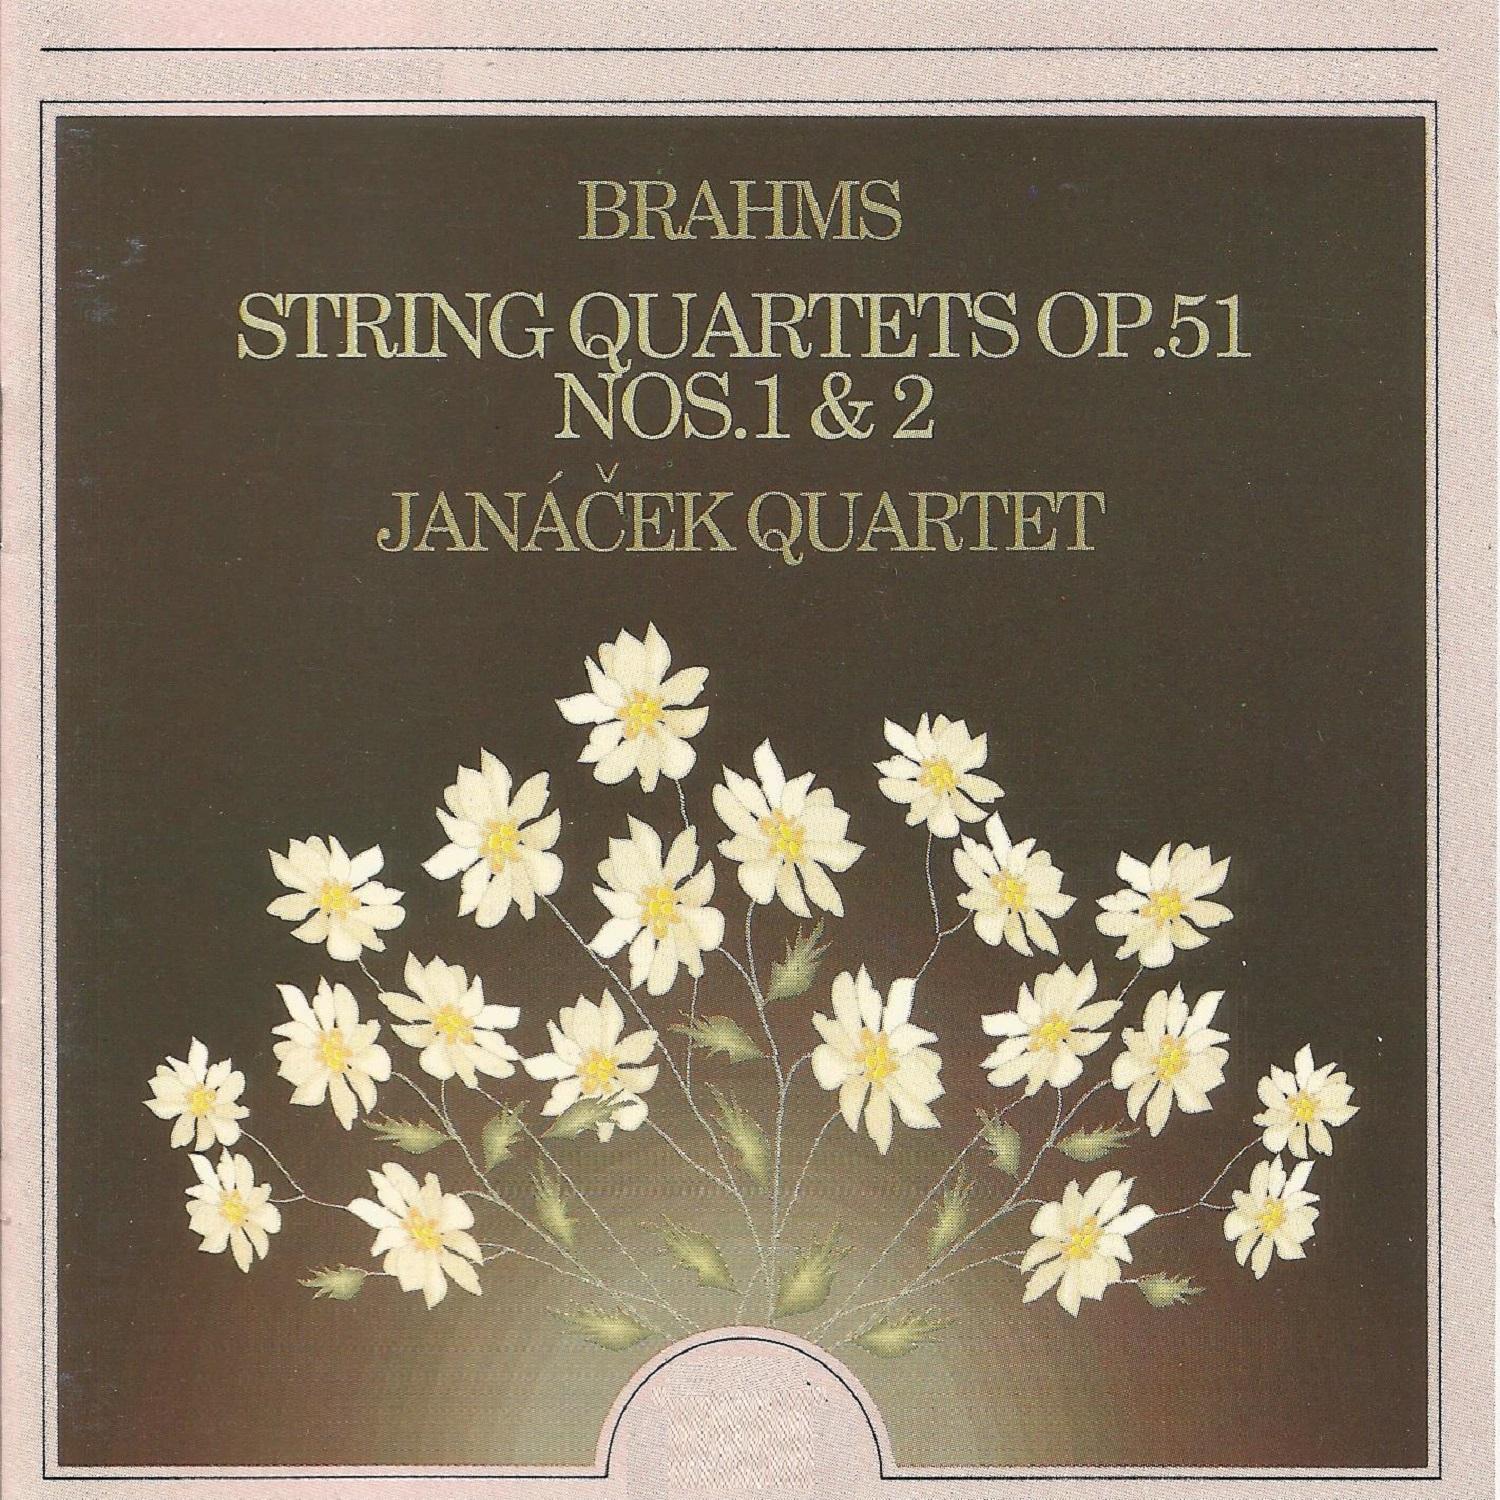 String Quartet No. 1 in C Minor, Op. 51 No. 1: I. Allegro